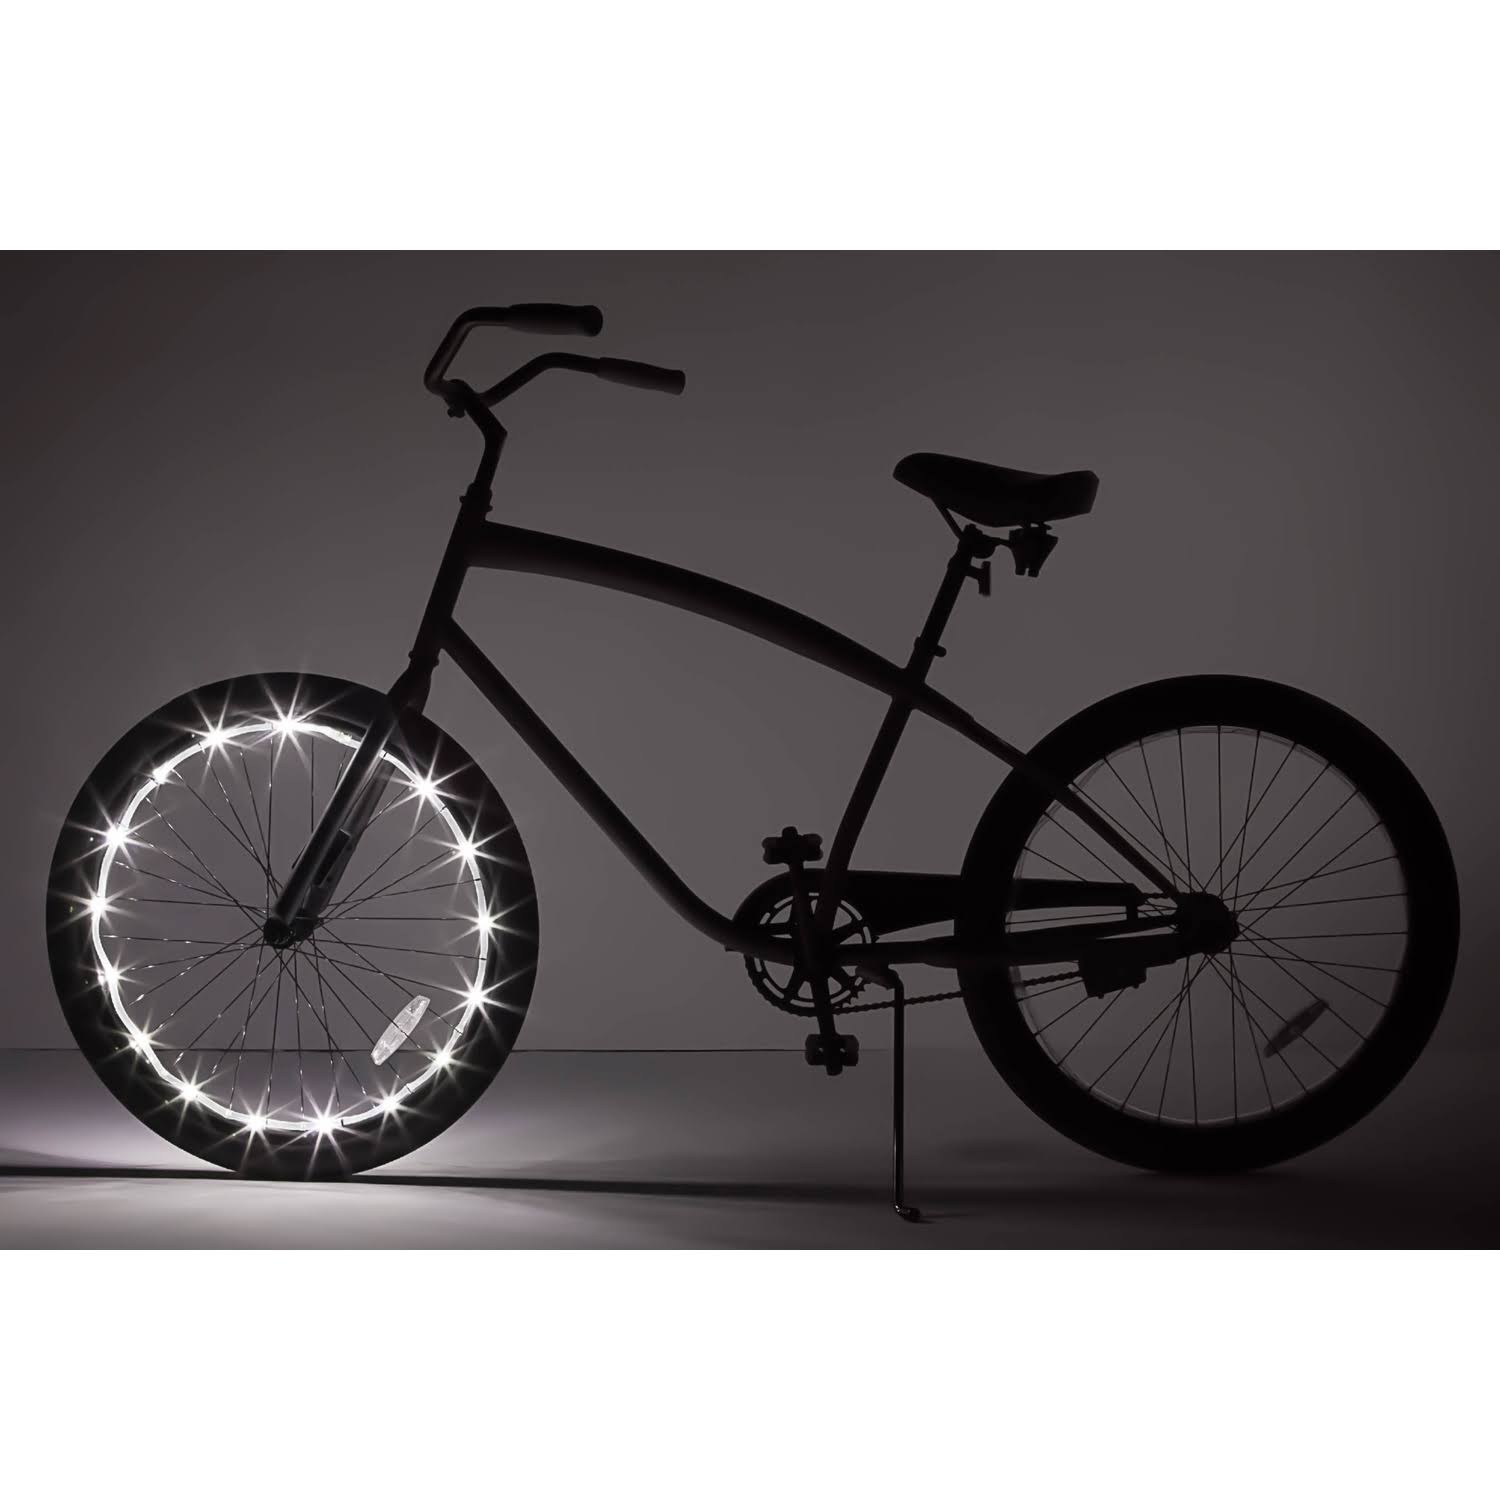 Wheel Brightz Led Bicycle Light - White